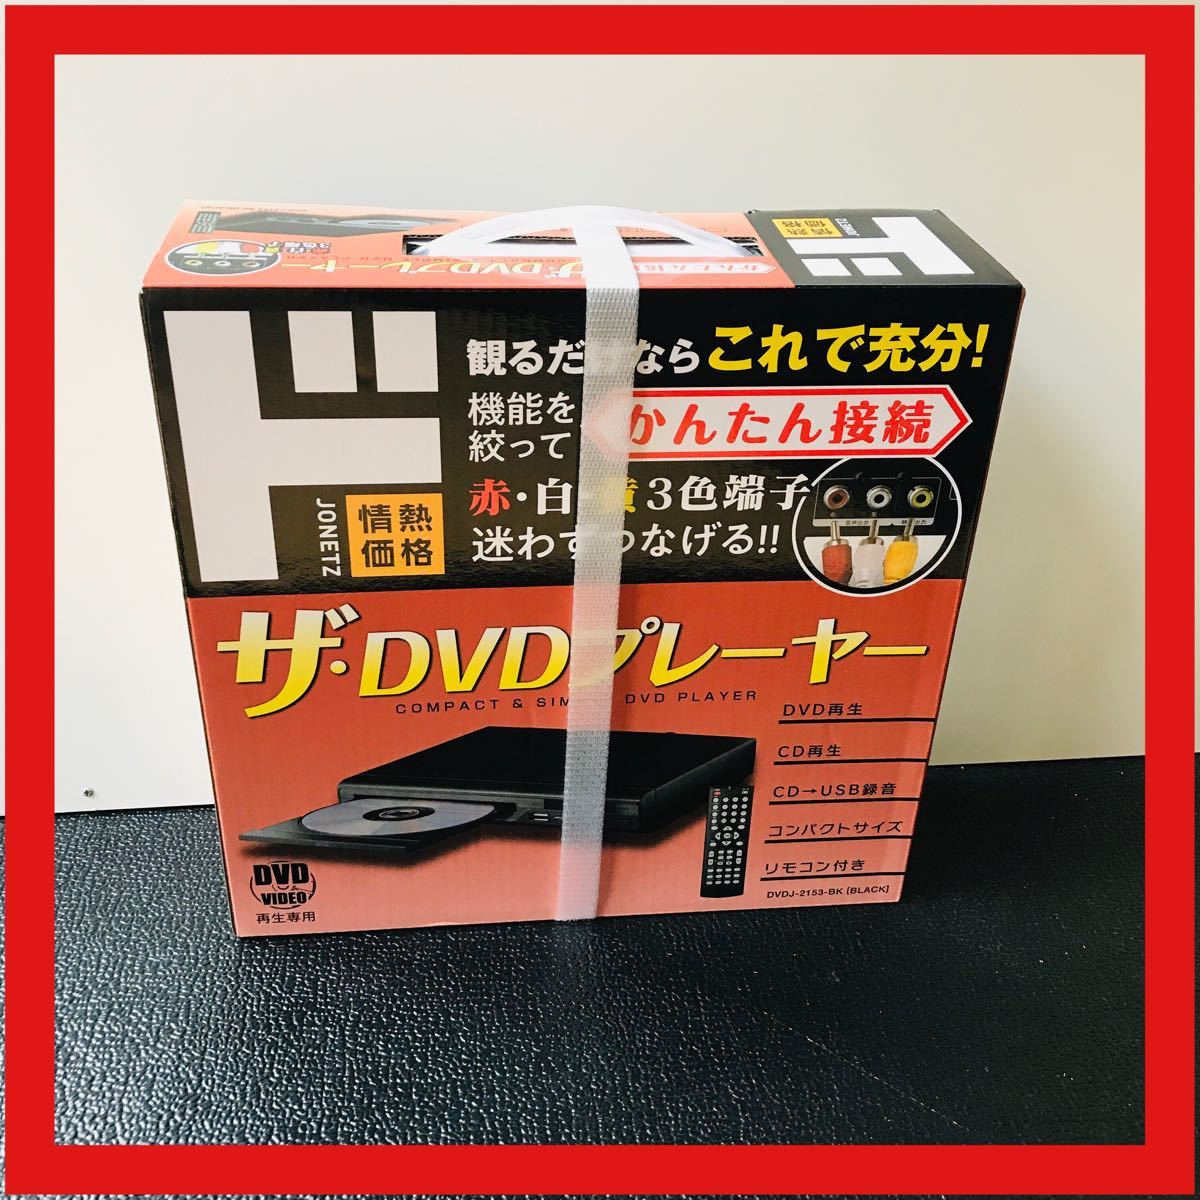 かんたん接続 ザ DVDJ-2153 DVDプレーヤー お気に入 DVDプレーヤー